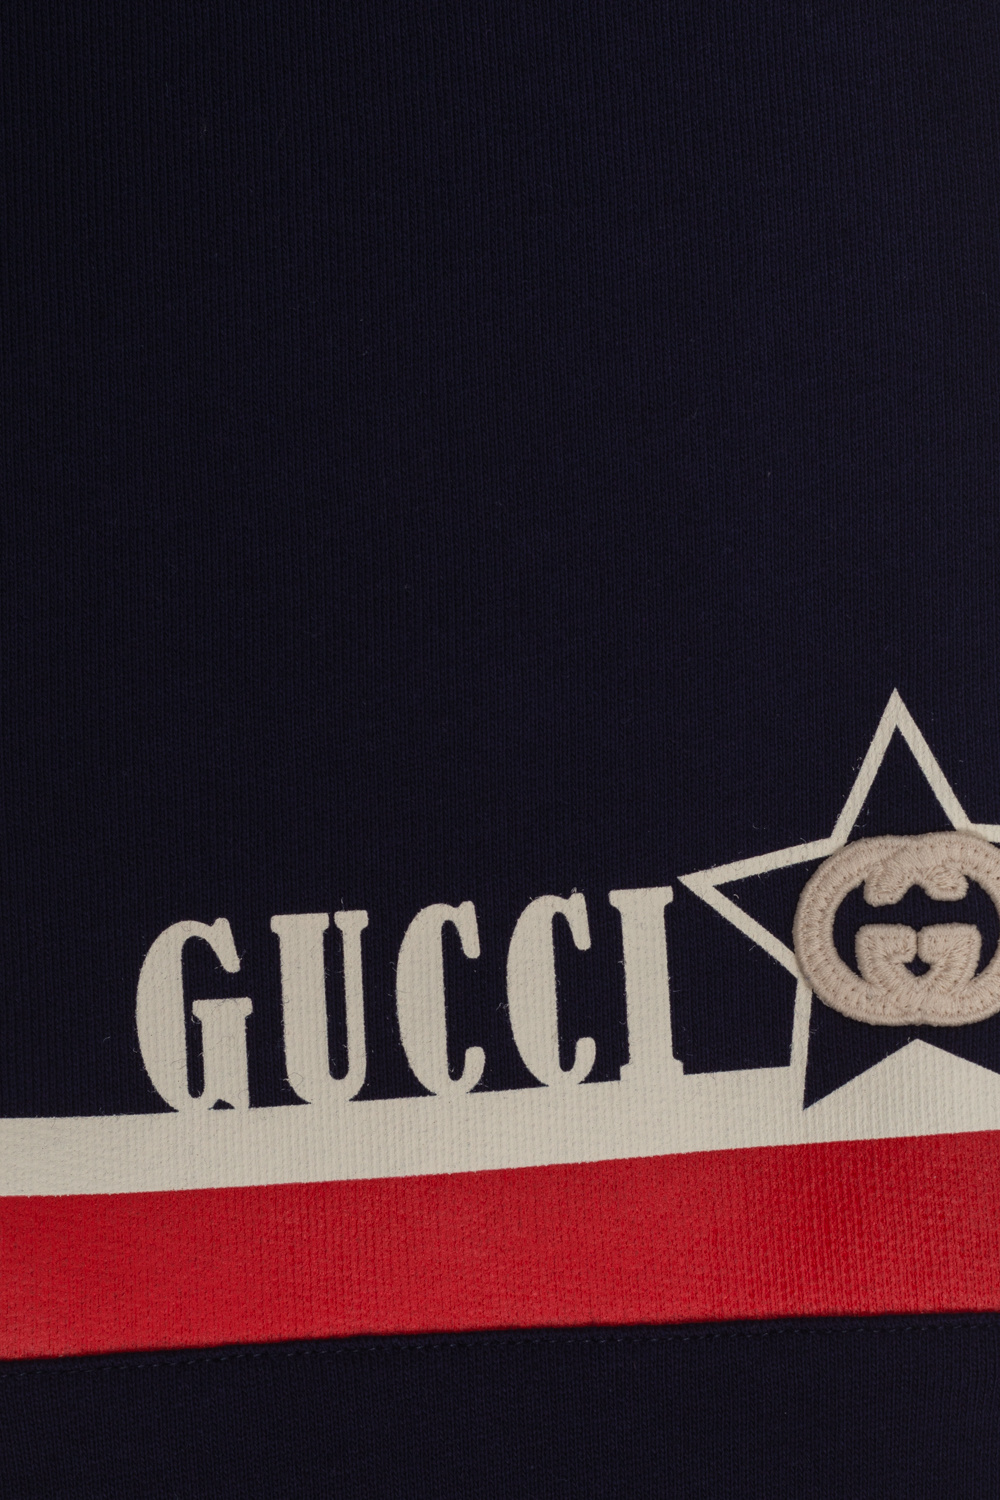 Gucci Kids Alessandro Michele Exits Gucci